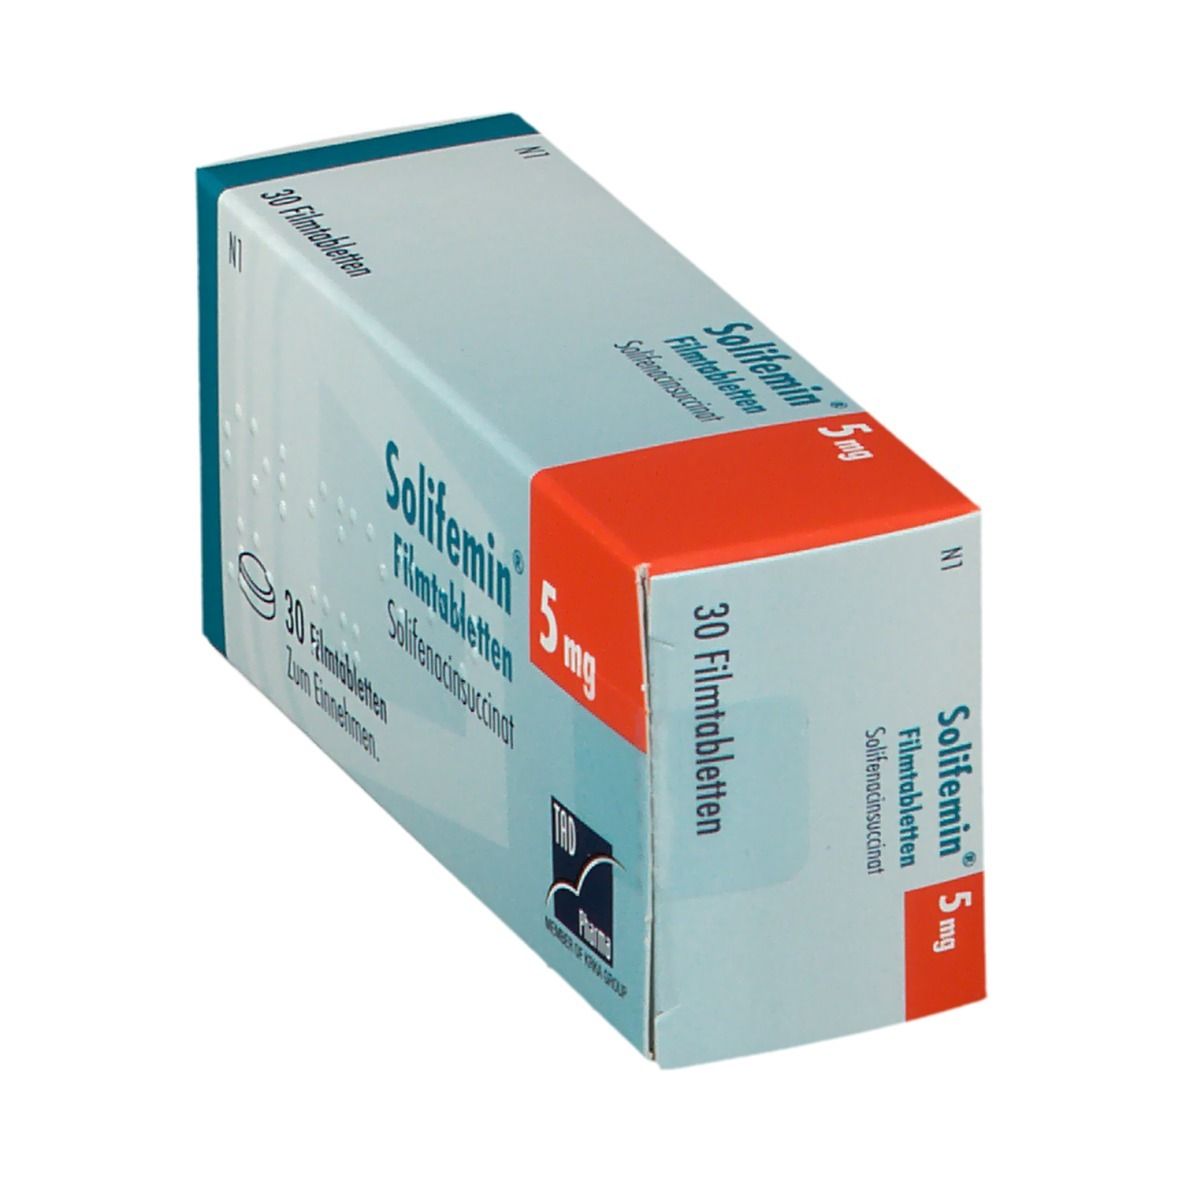 Solifemin® 5 mg